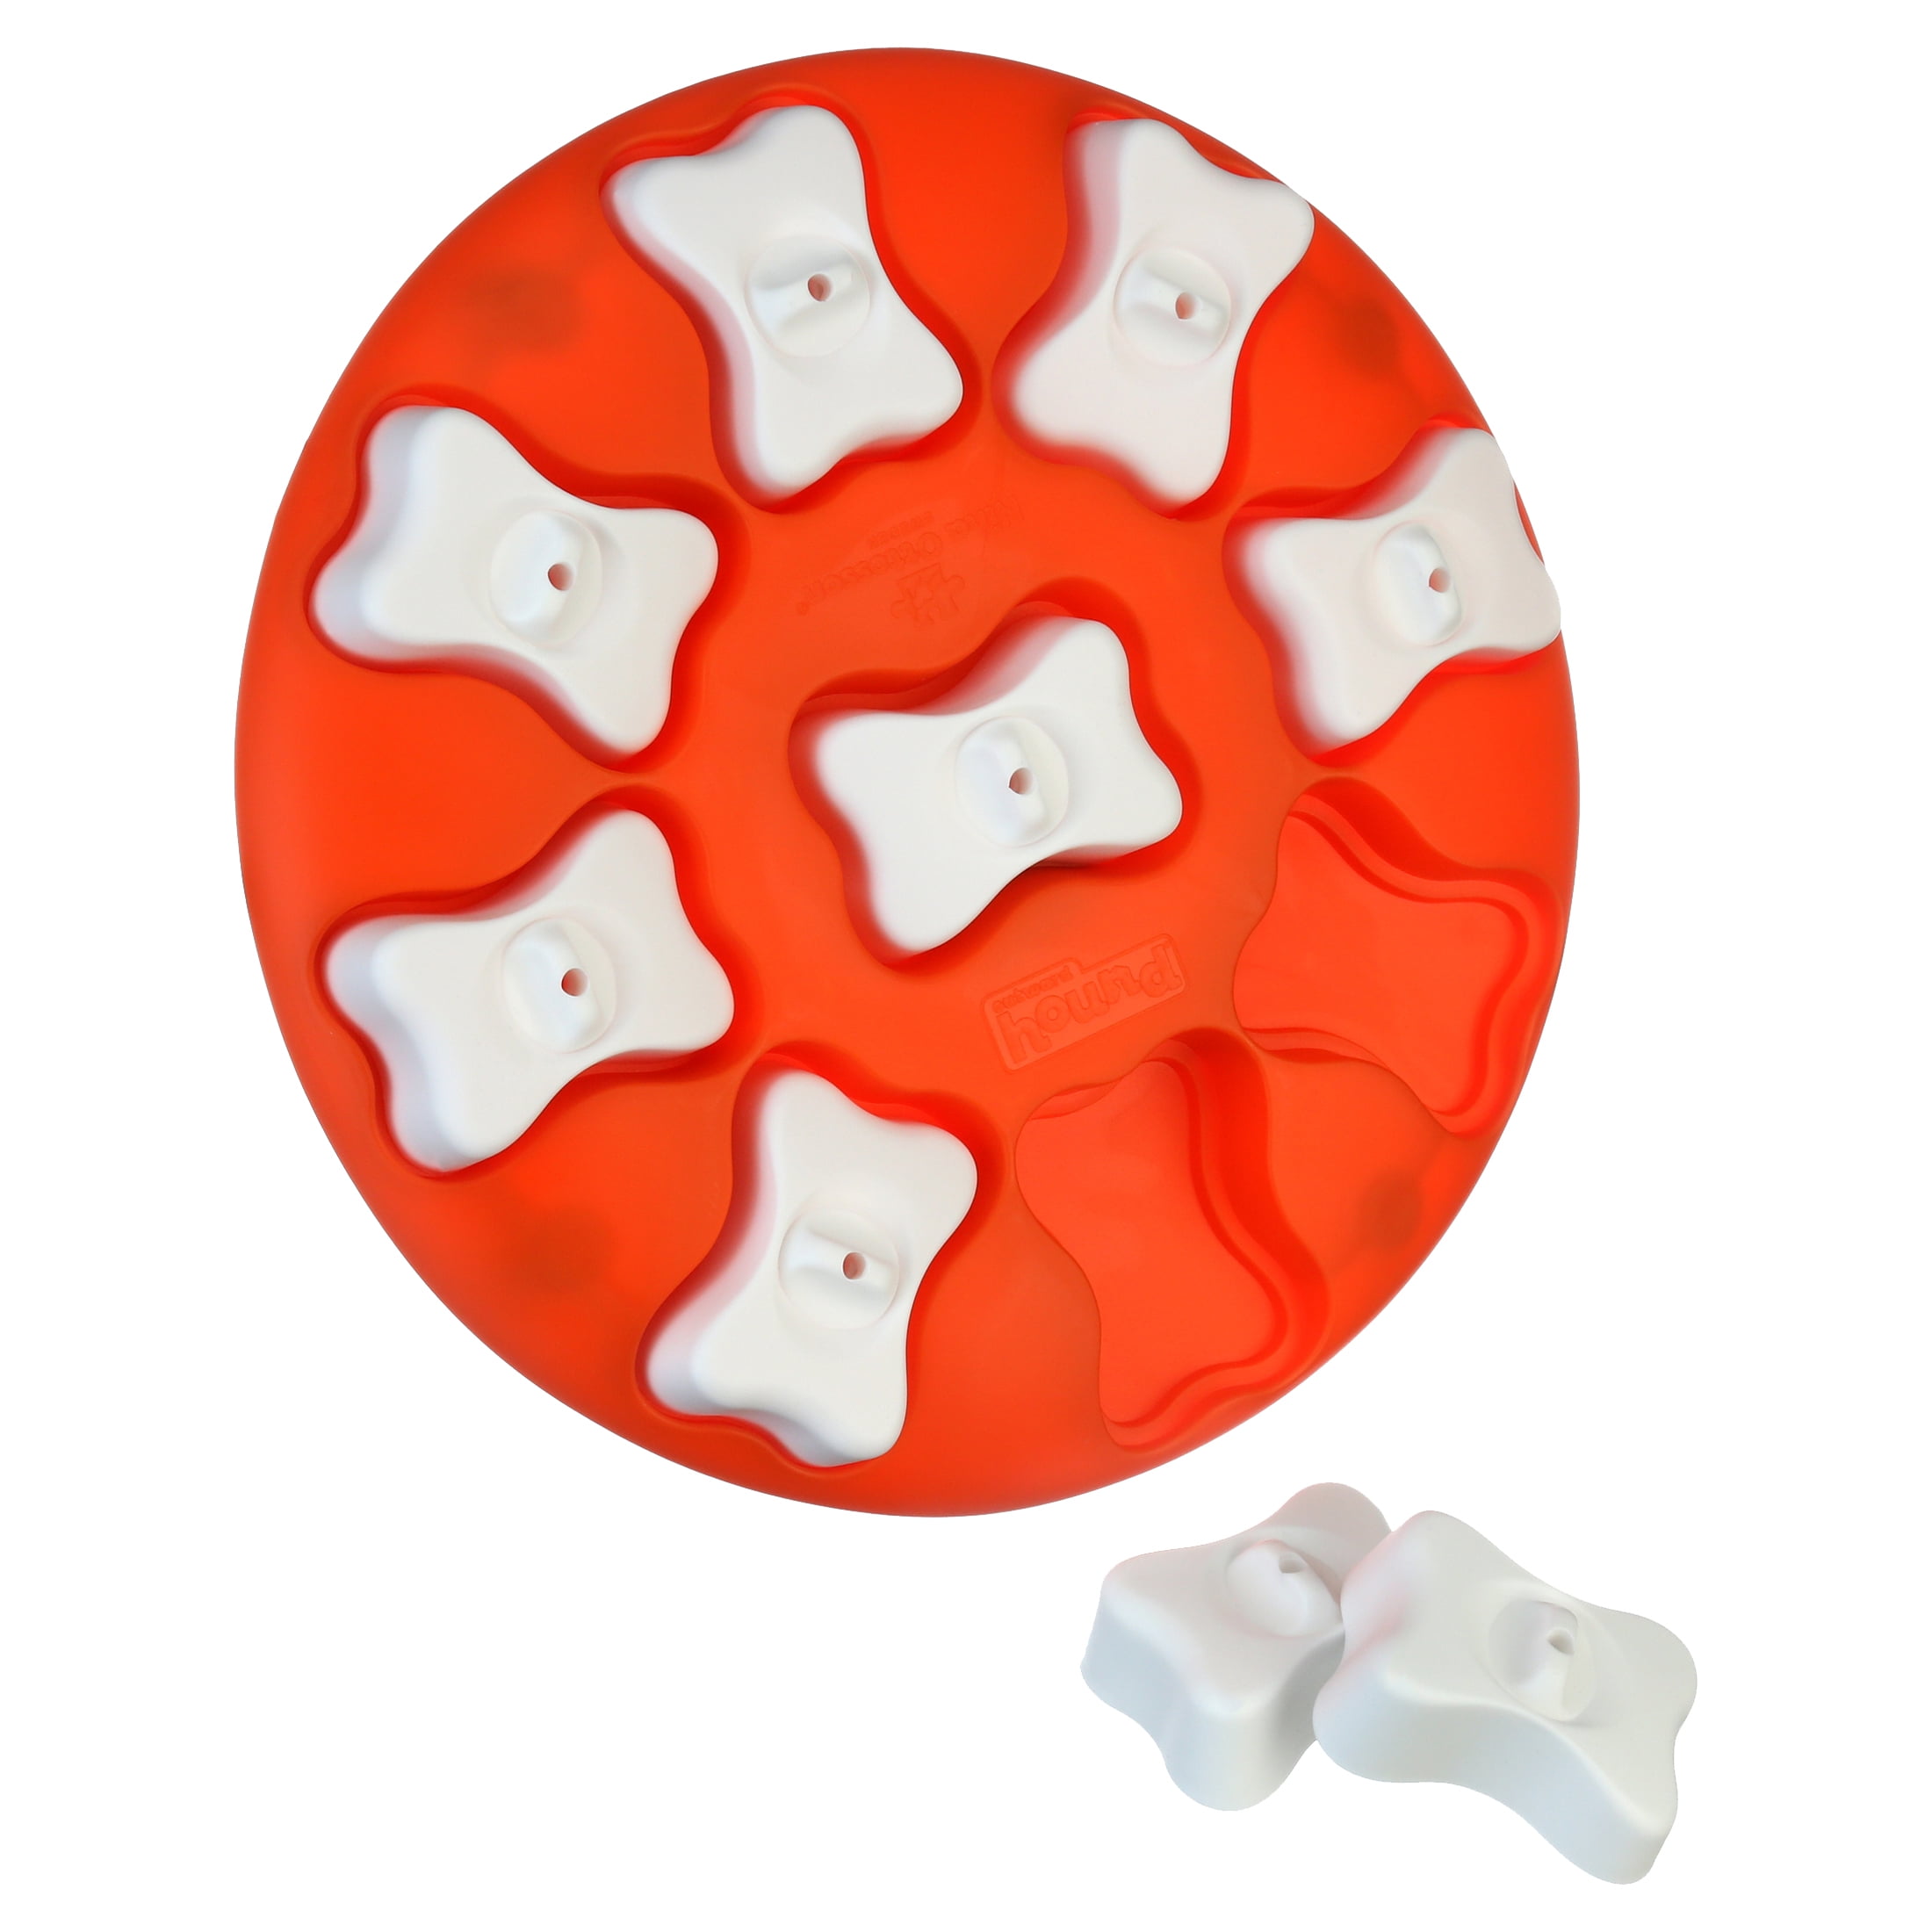 Outward Hound Orange Smart Puzzle Dog Toy, Large